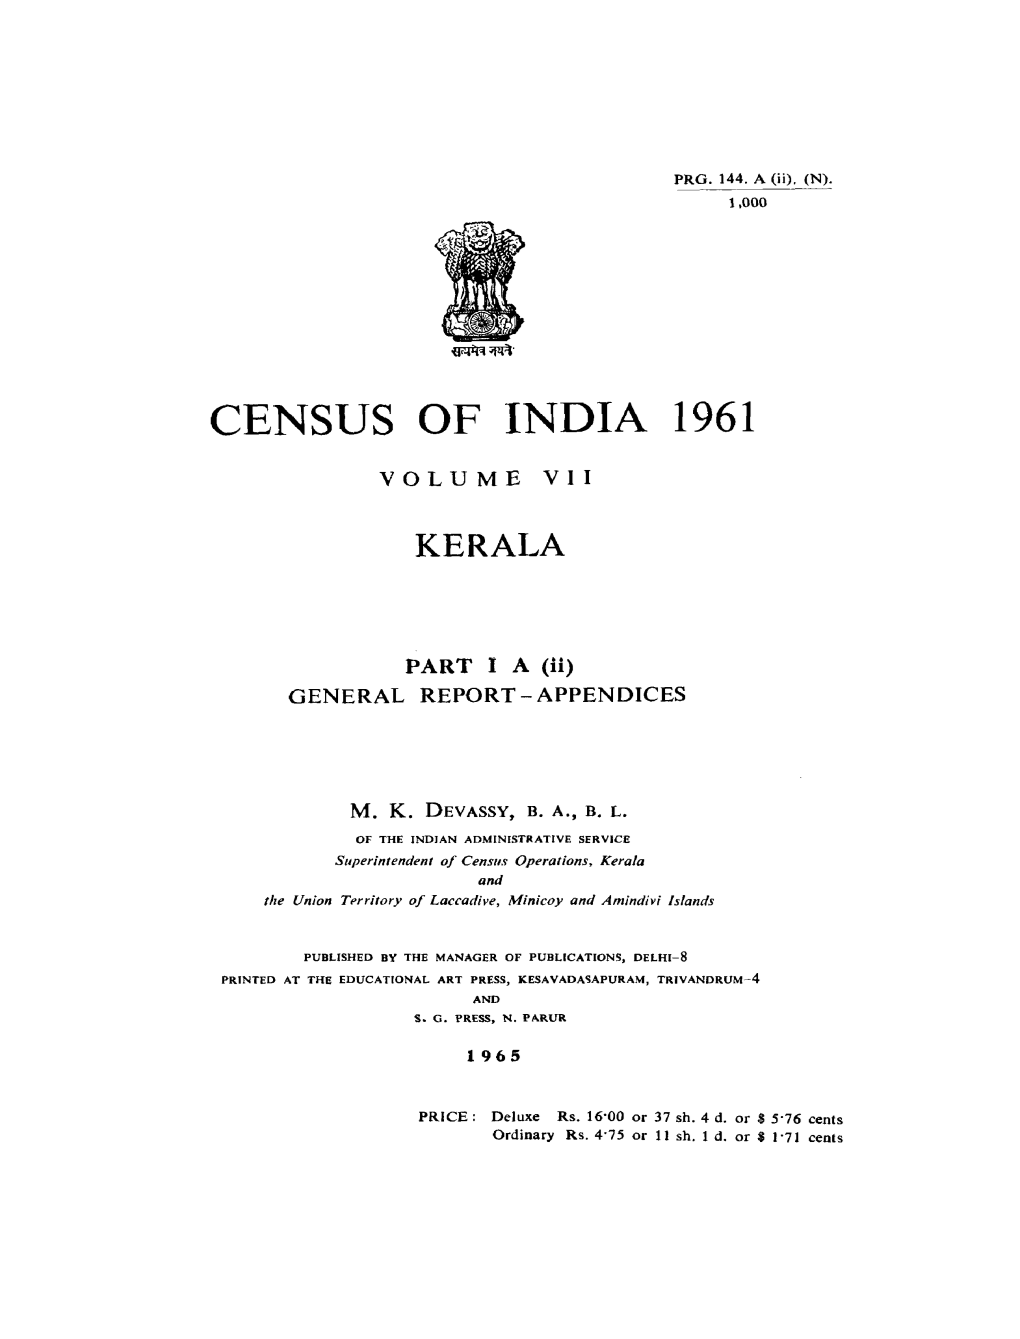 Census of India 1961